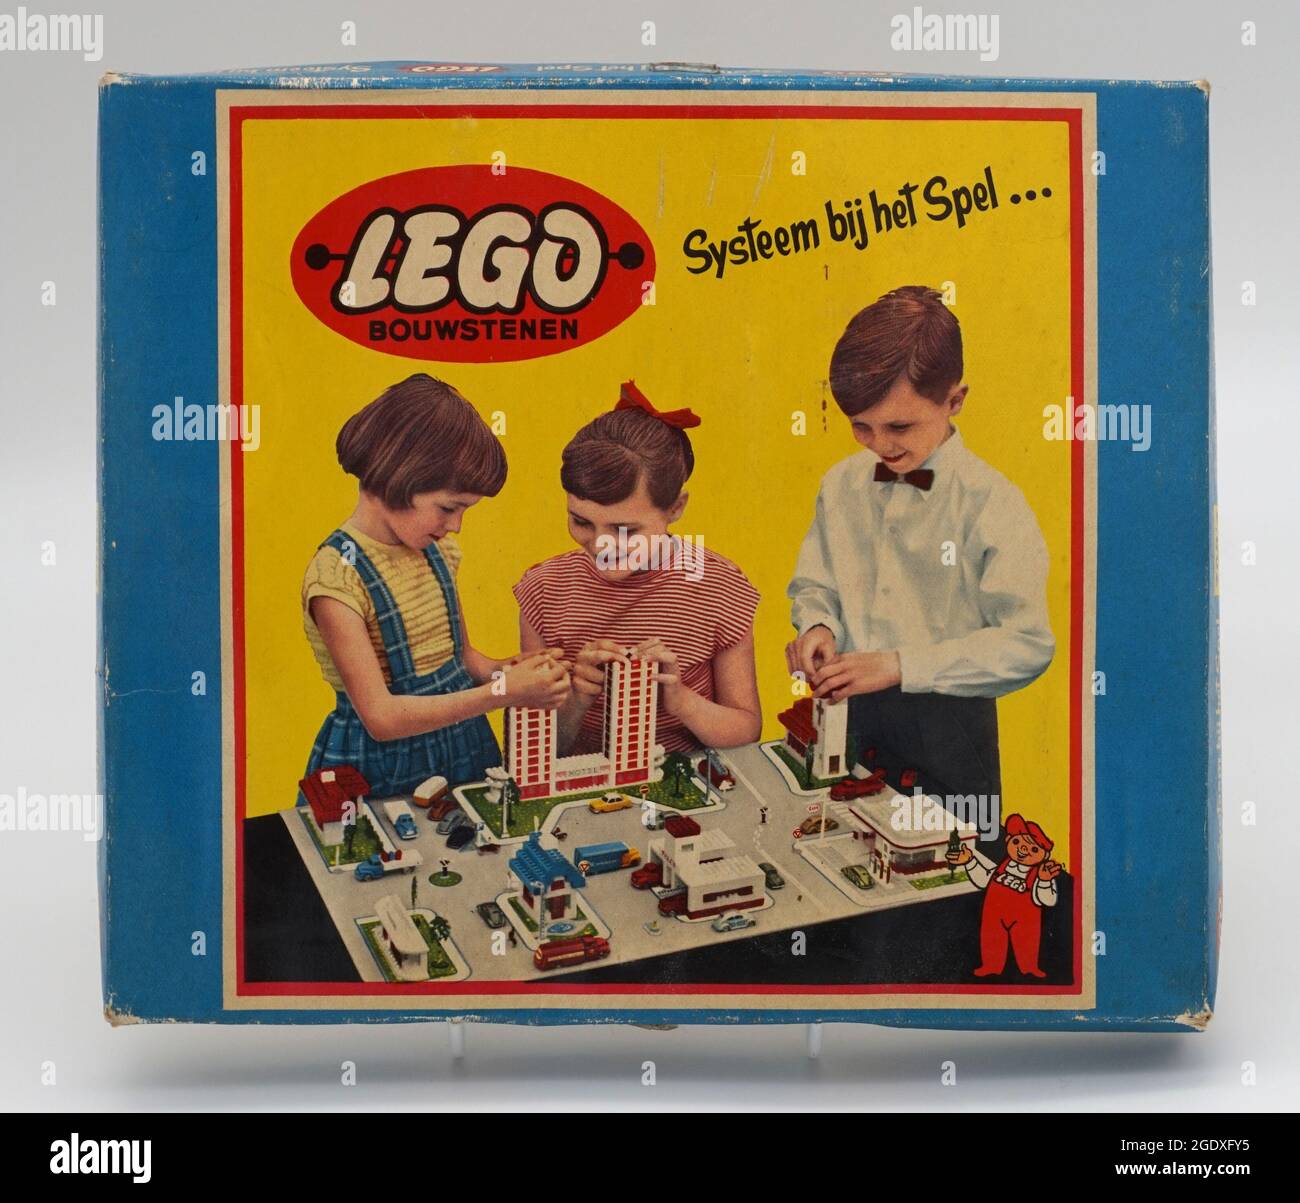 aliviar golpear Álbum de graduación Ladrillos de construcción LEGO. Diseño de la primera caja de 1958,  exclusivo de Holanda. Juego de cajas de Lego Temprano. Lanzado en 1953 como  Lego, el diseño fue reforzado en 1958 con